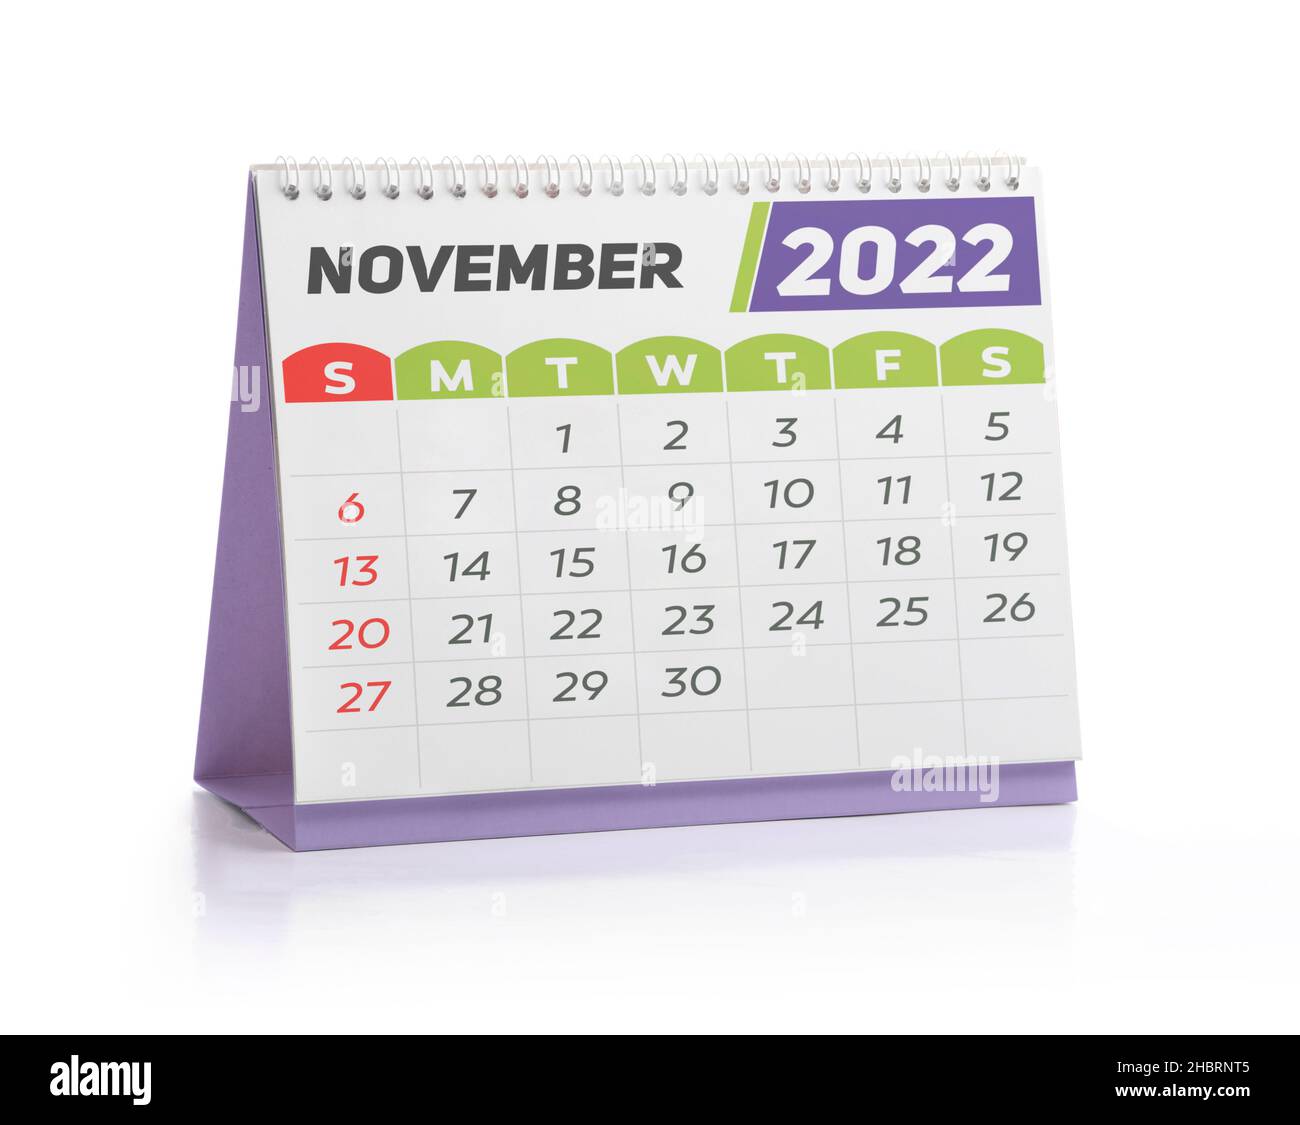 November White Office Calendar 2022 Isolated on White Stock Photo